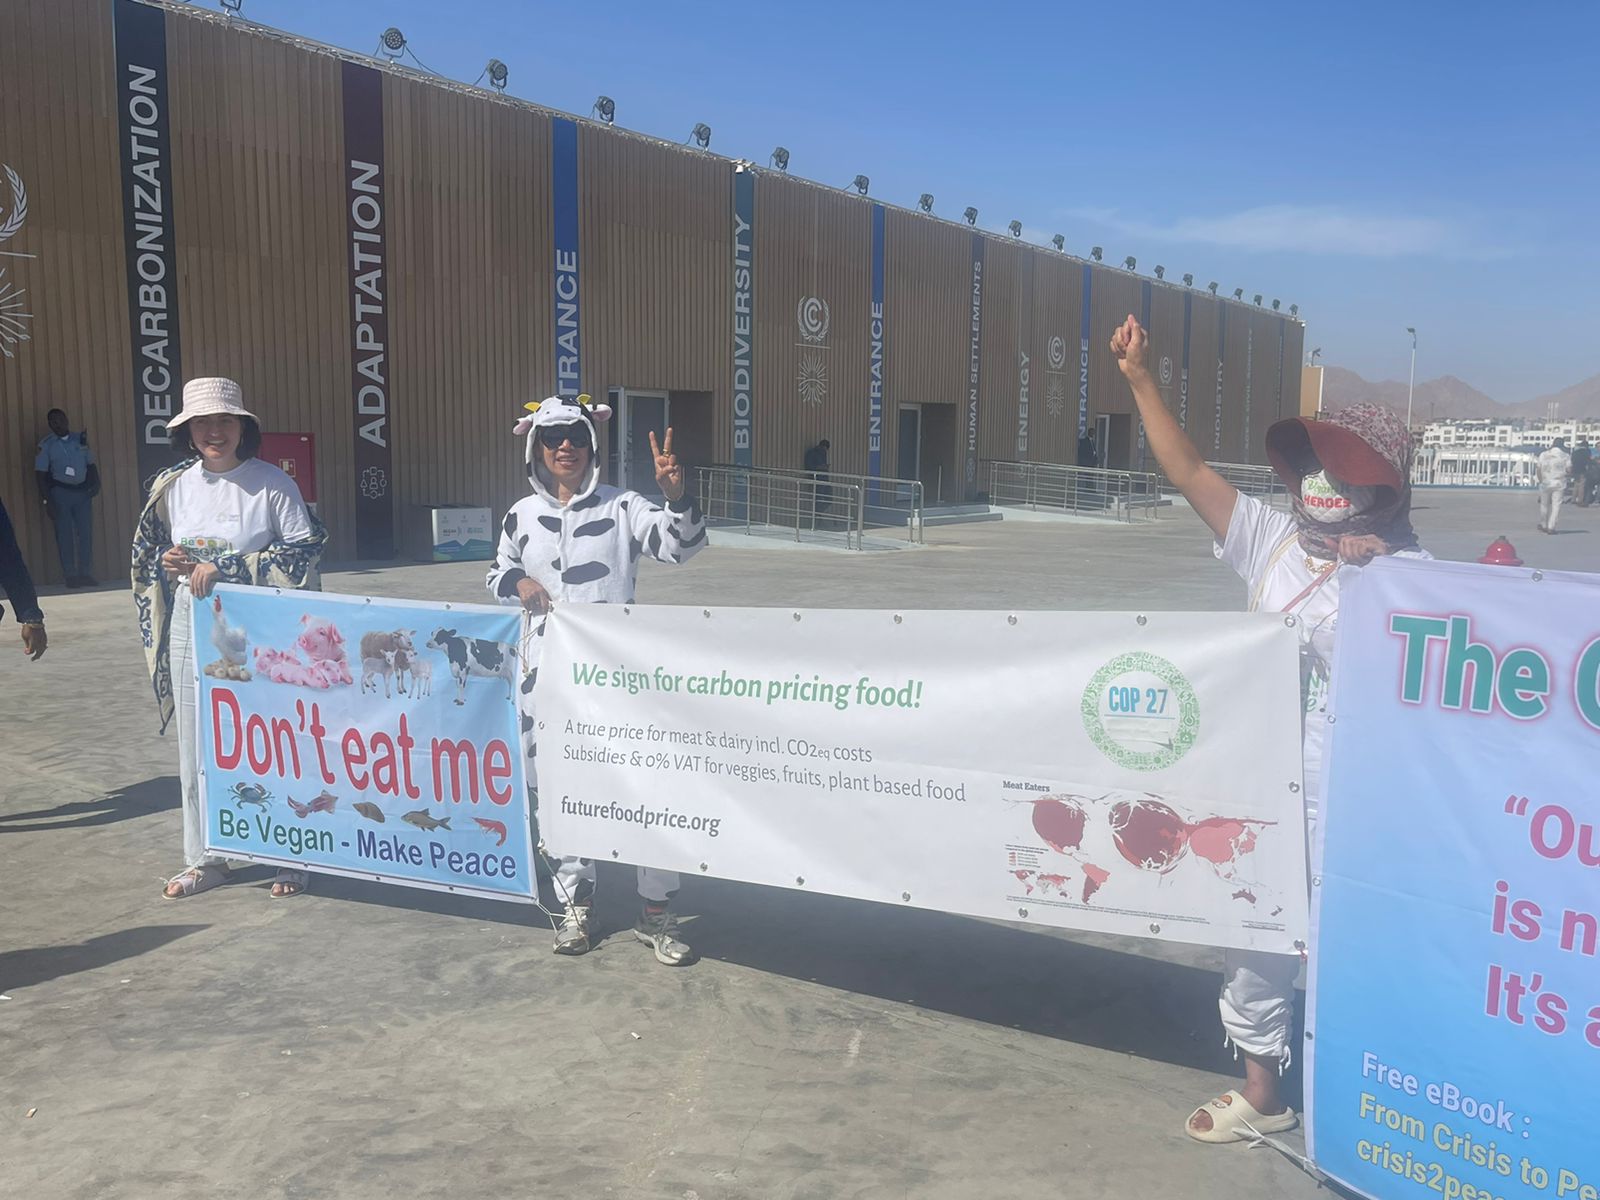 تظاهرات سلمية لمنع ذبح الحيوانات على هامش مؤتمر المناخ بشرم الشيخ